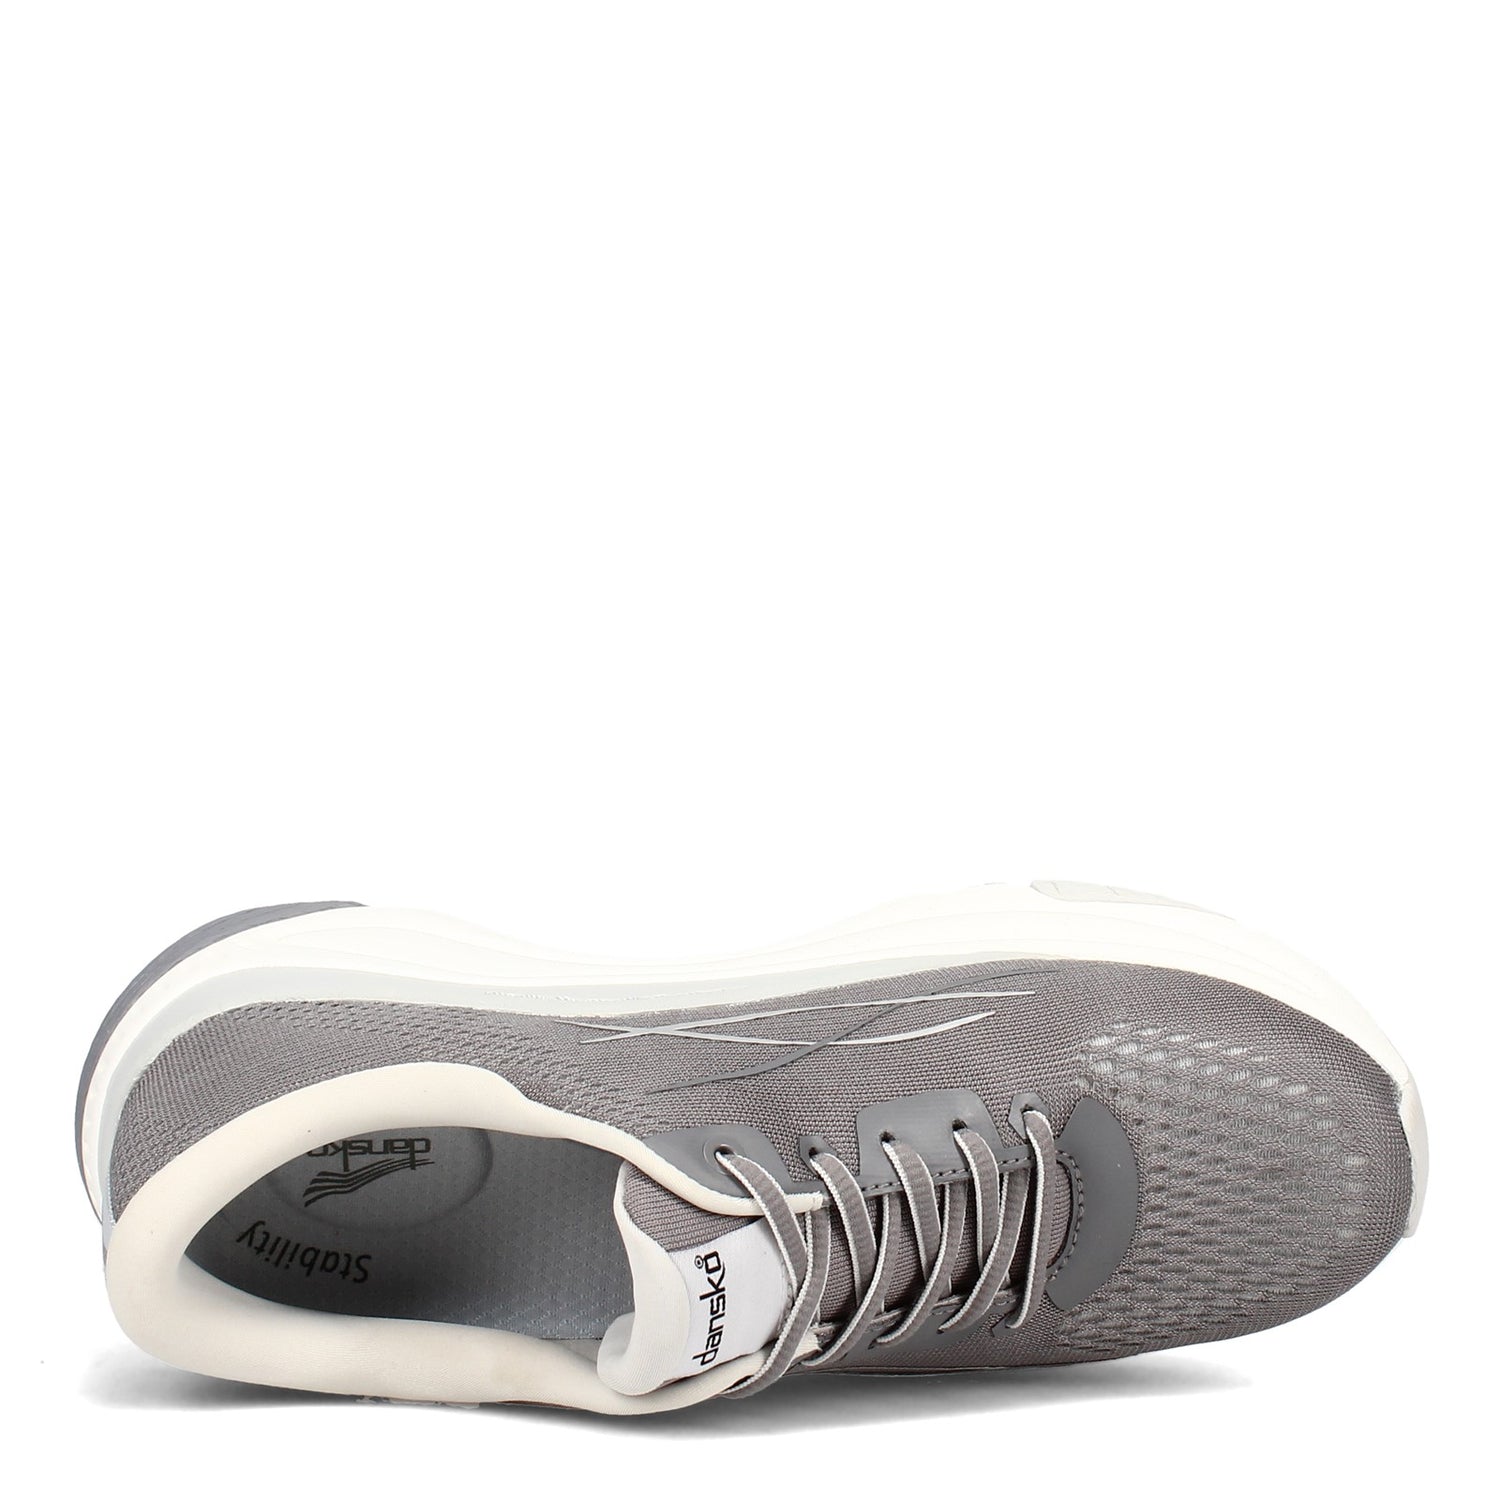 Peltz Shoes  Women's Dansko Pace Sneaker Grey 4205-949400